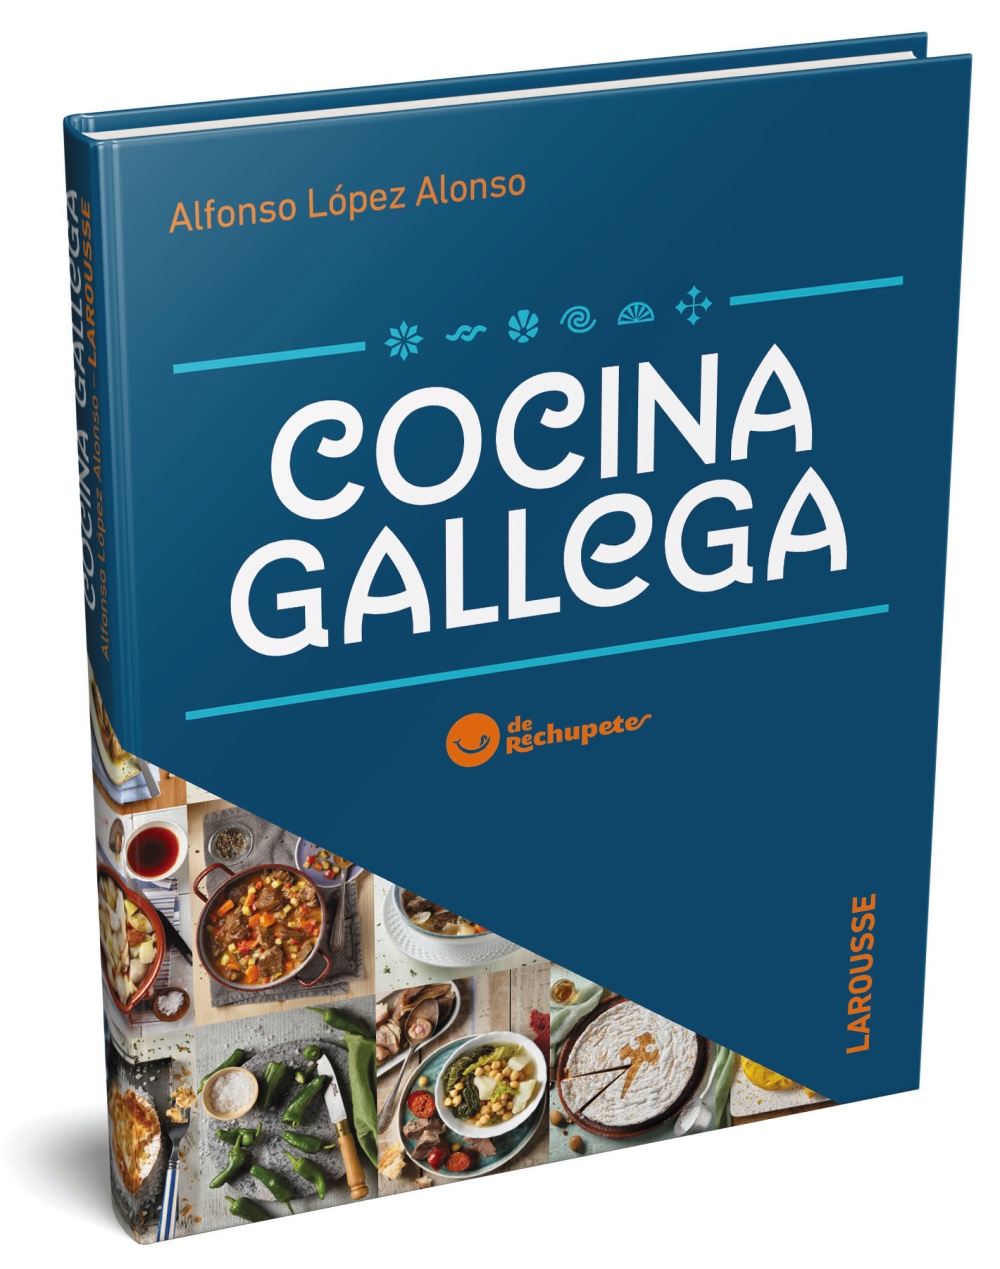 Cocina gallega de Rechupete - Alfonso  López Alonso